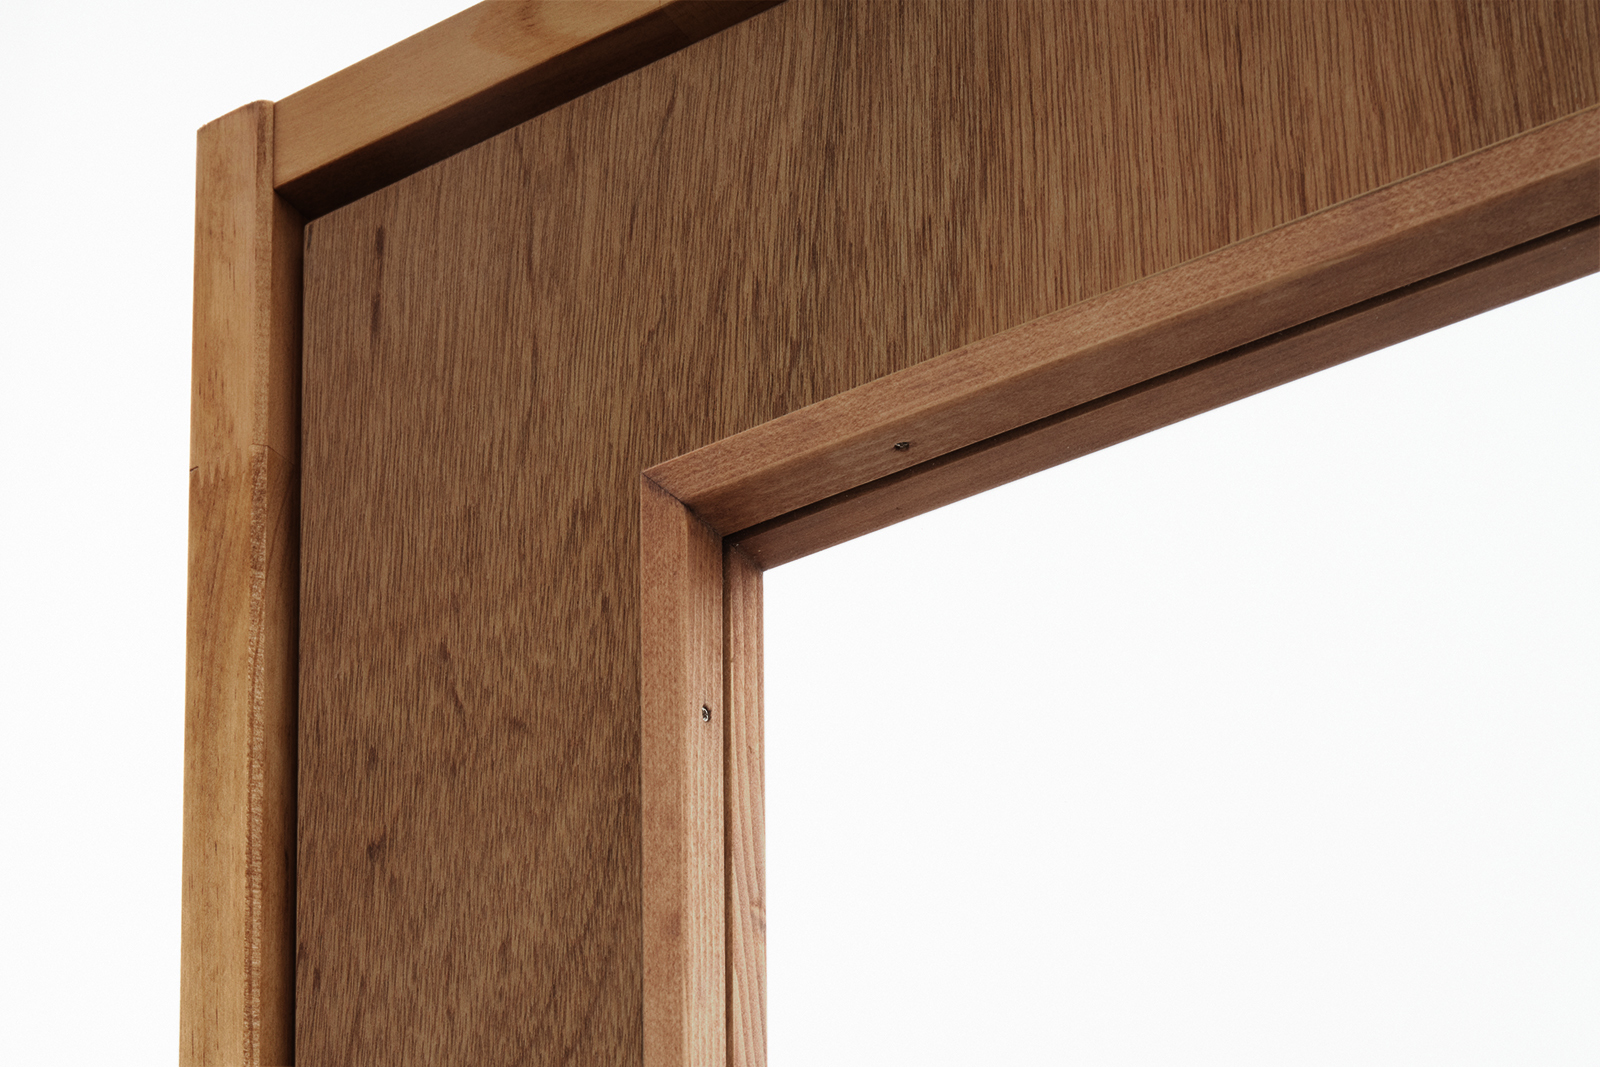 木製ユニットドア ガラス開き戸 ラワン DW-DR012-01-G191 ドアと枠で素材が異なるため、色味は若干異なります